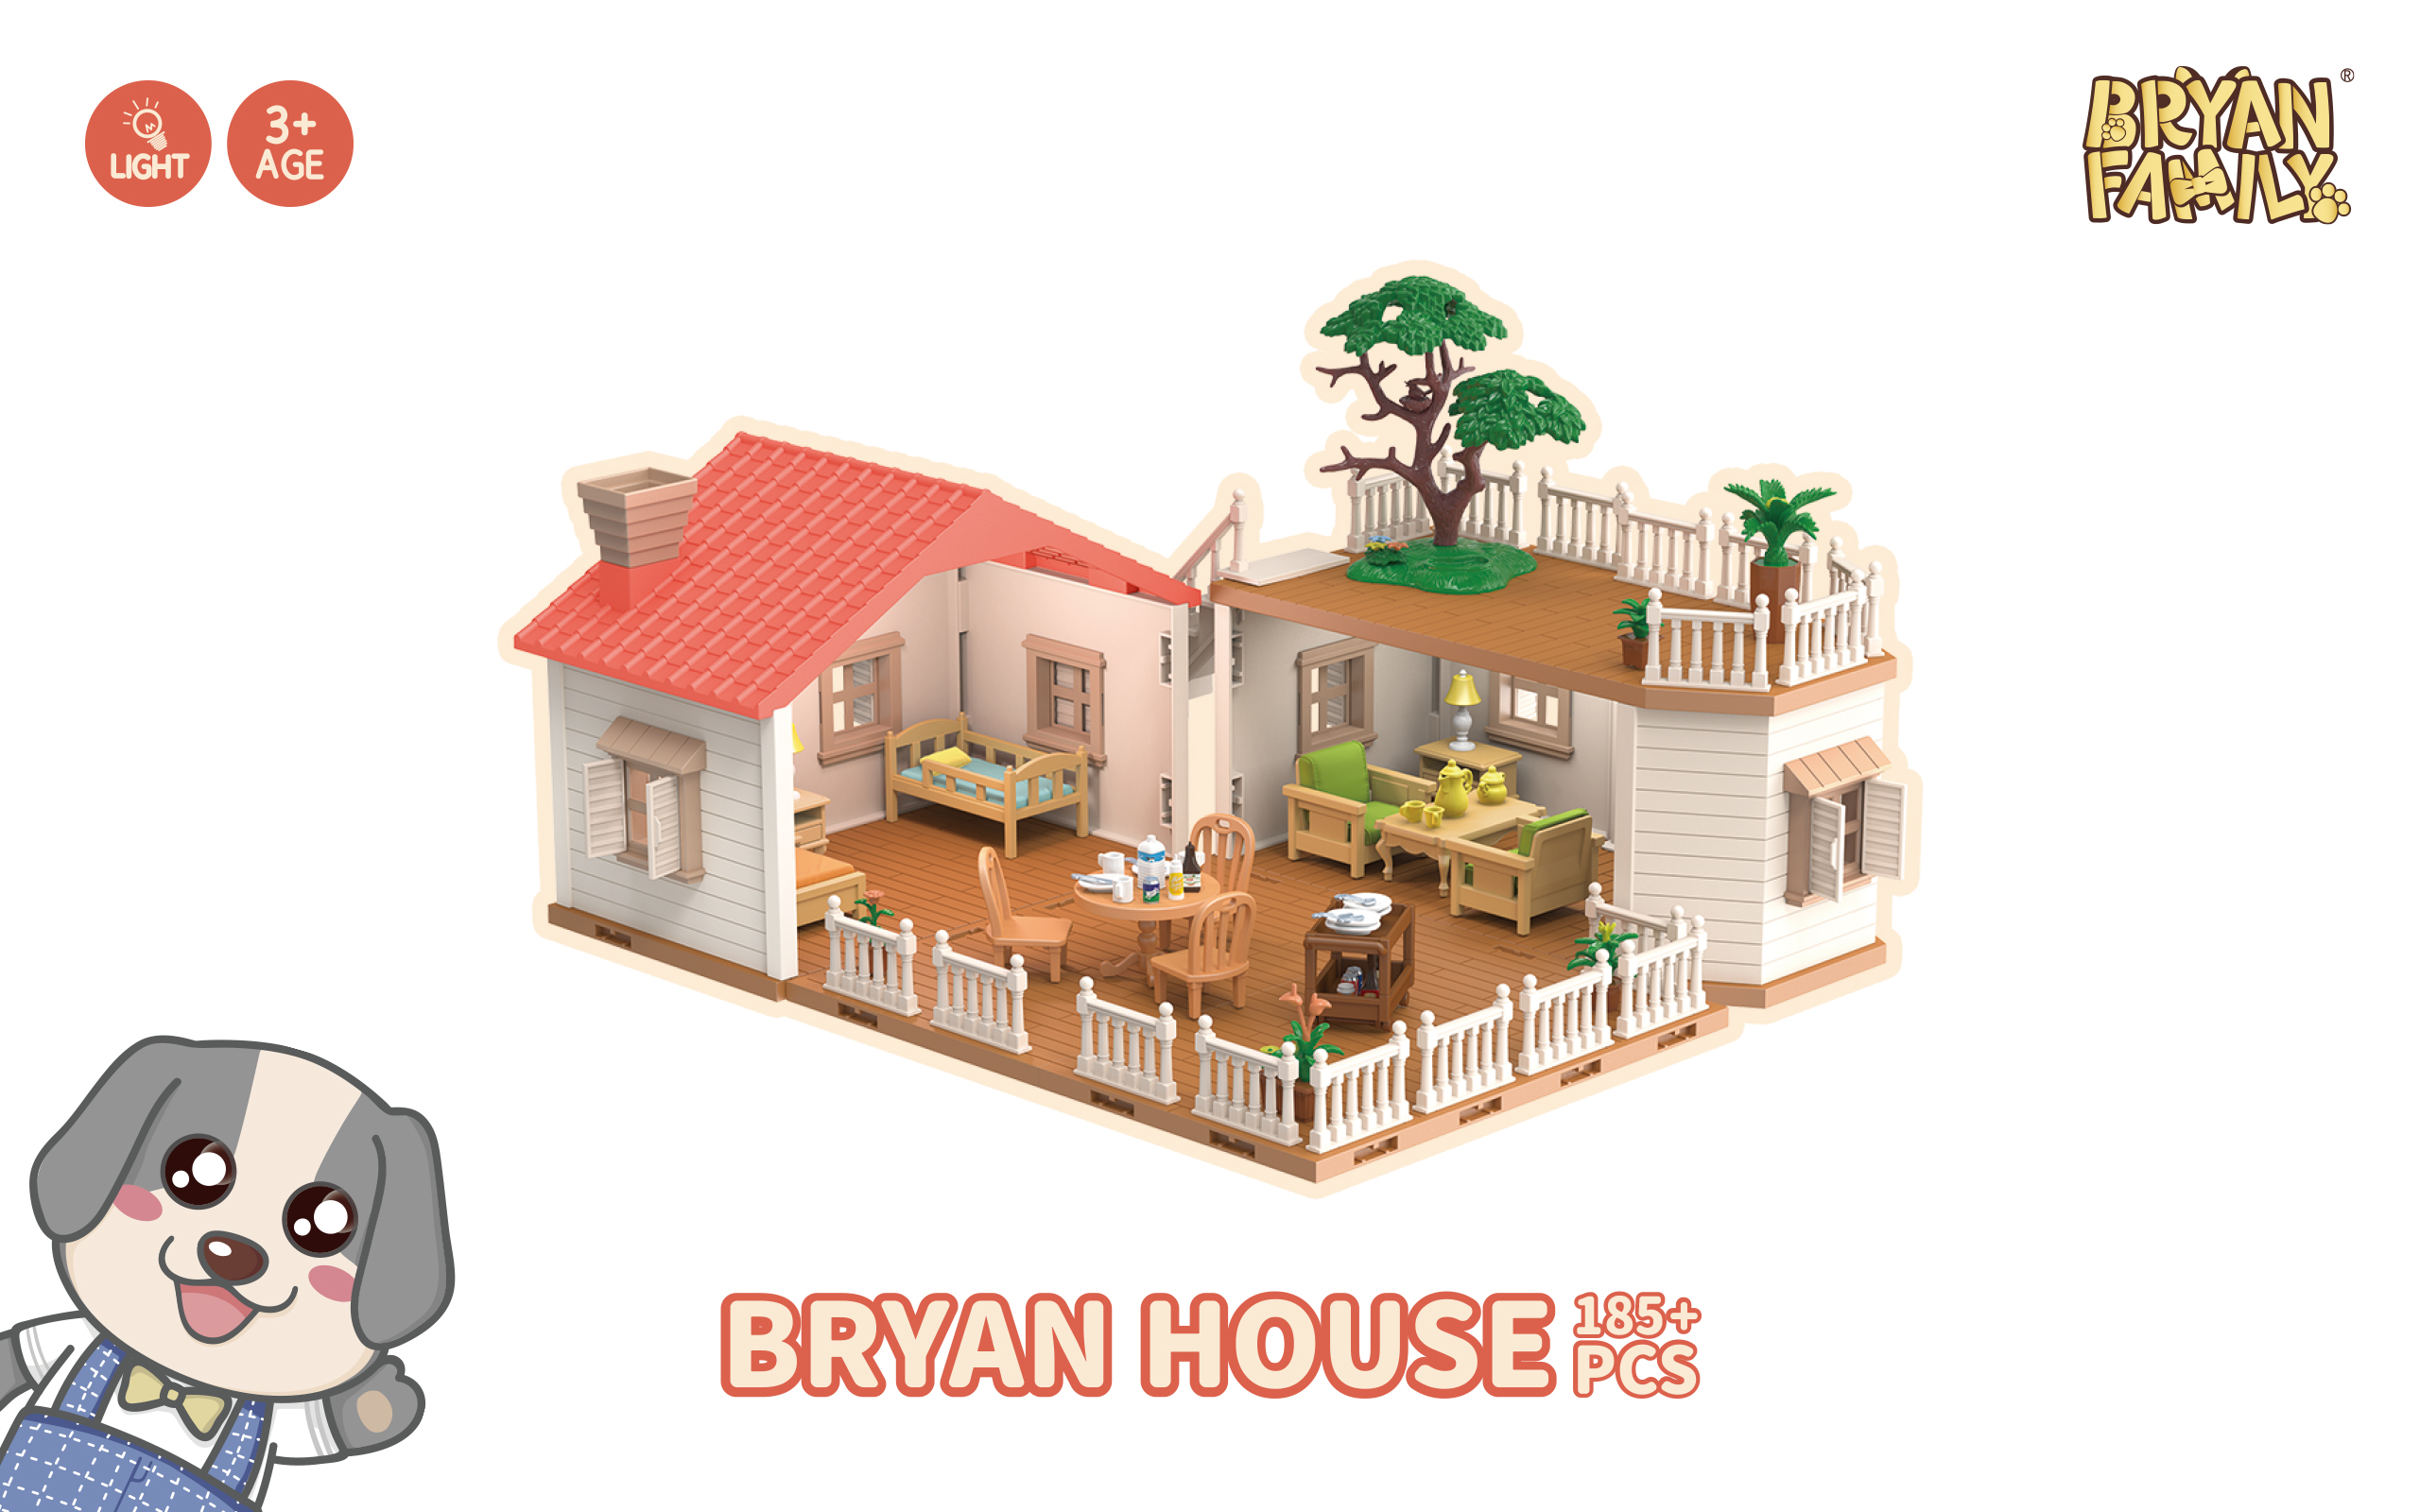 Bryan House 185+PCS